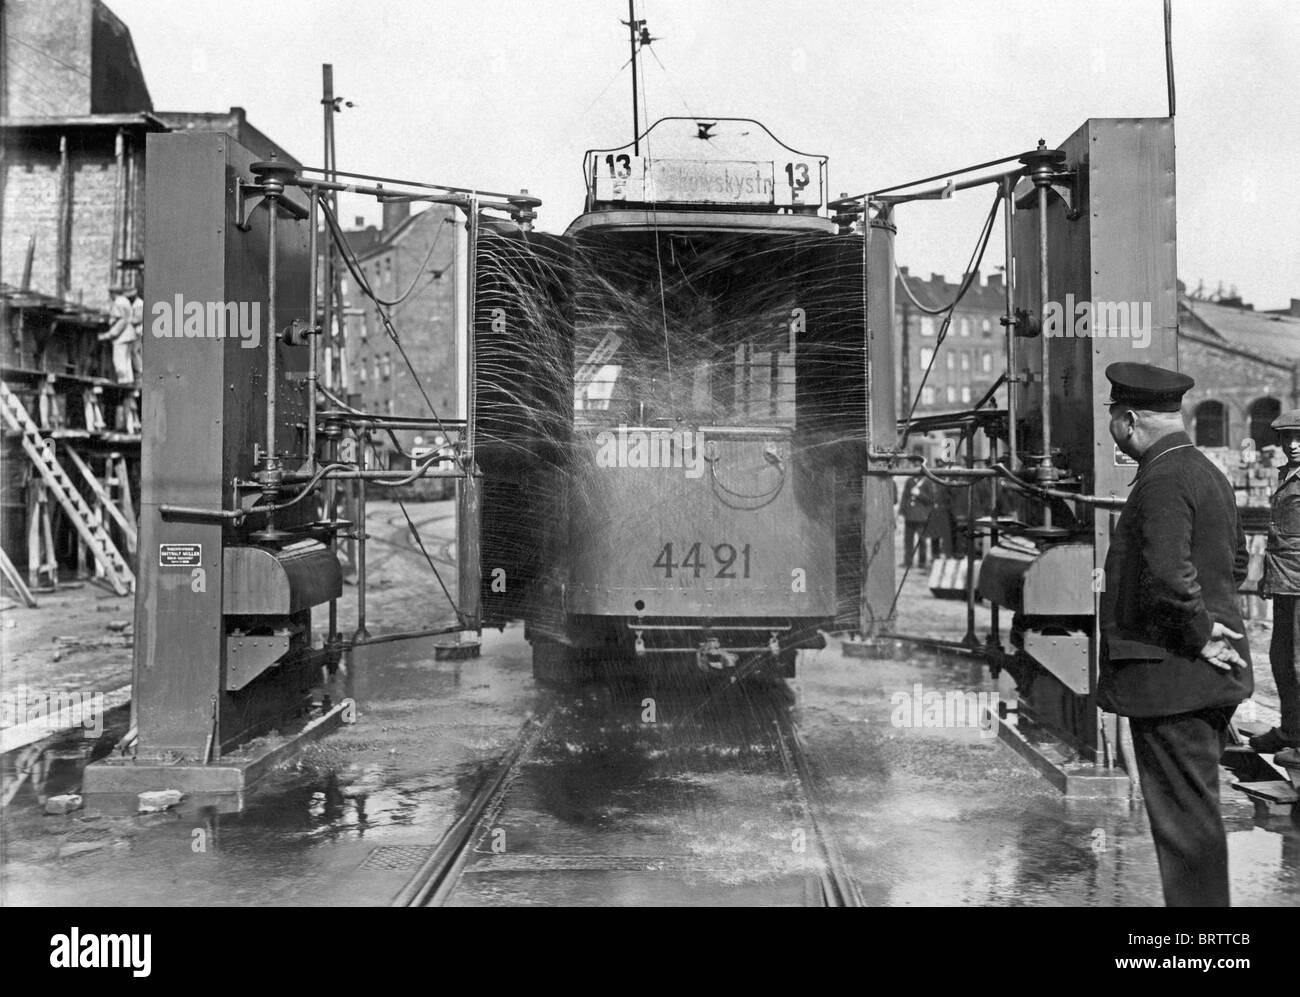 Instalación de lavado para tranvías, imagen histórica de 1925, Berlín, Alemania, Europa Foto de stock